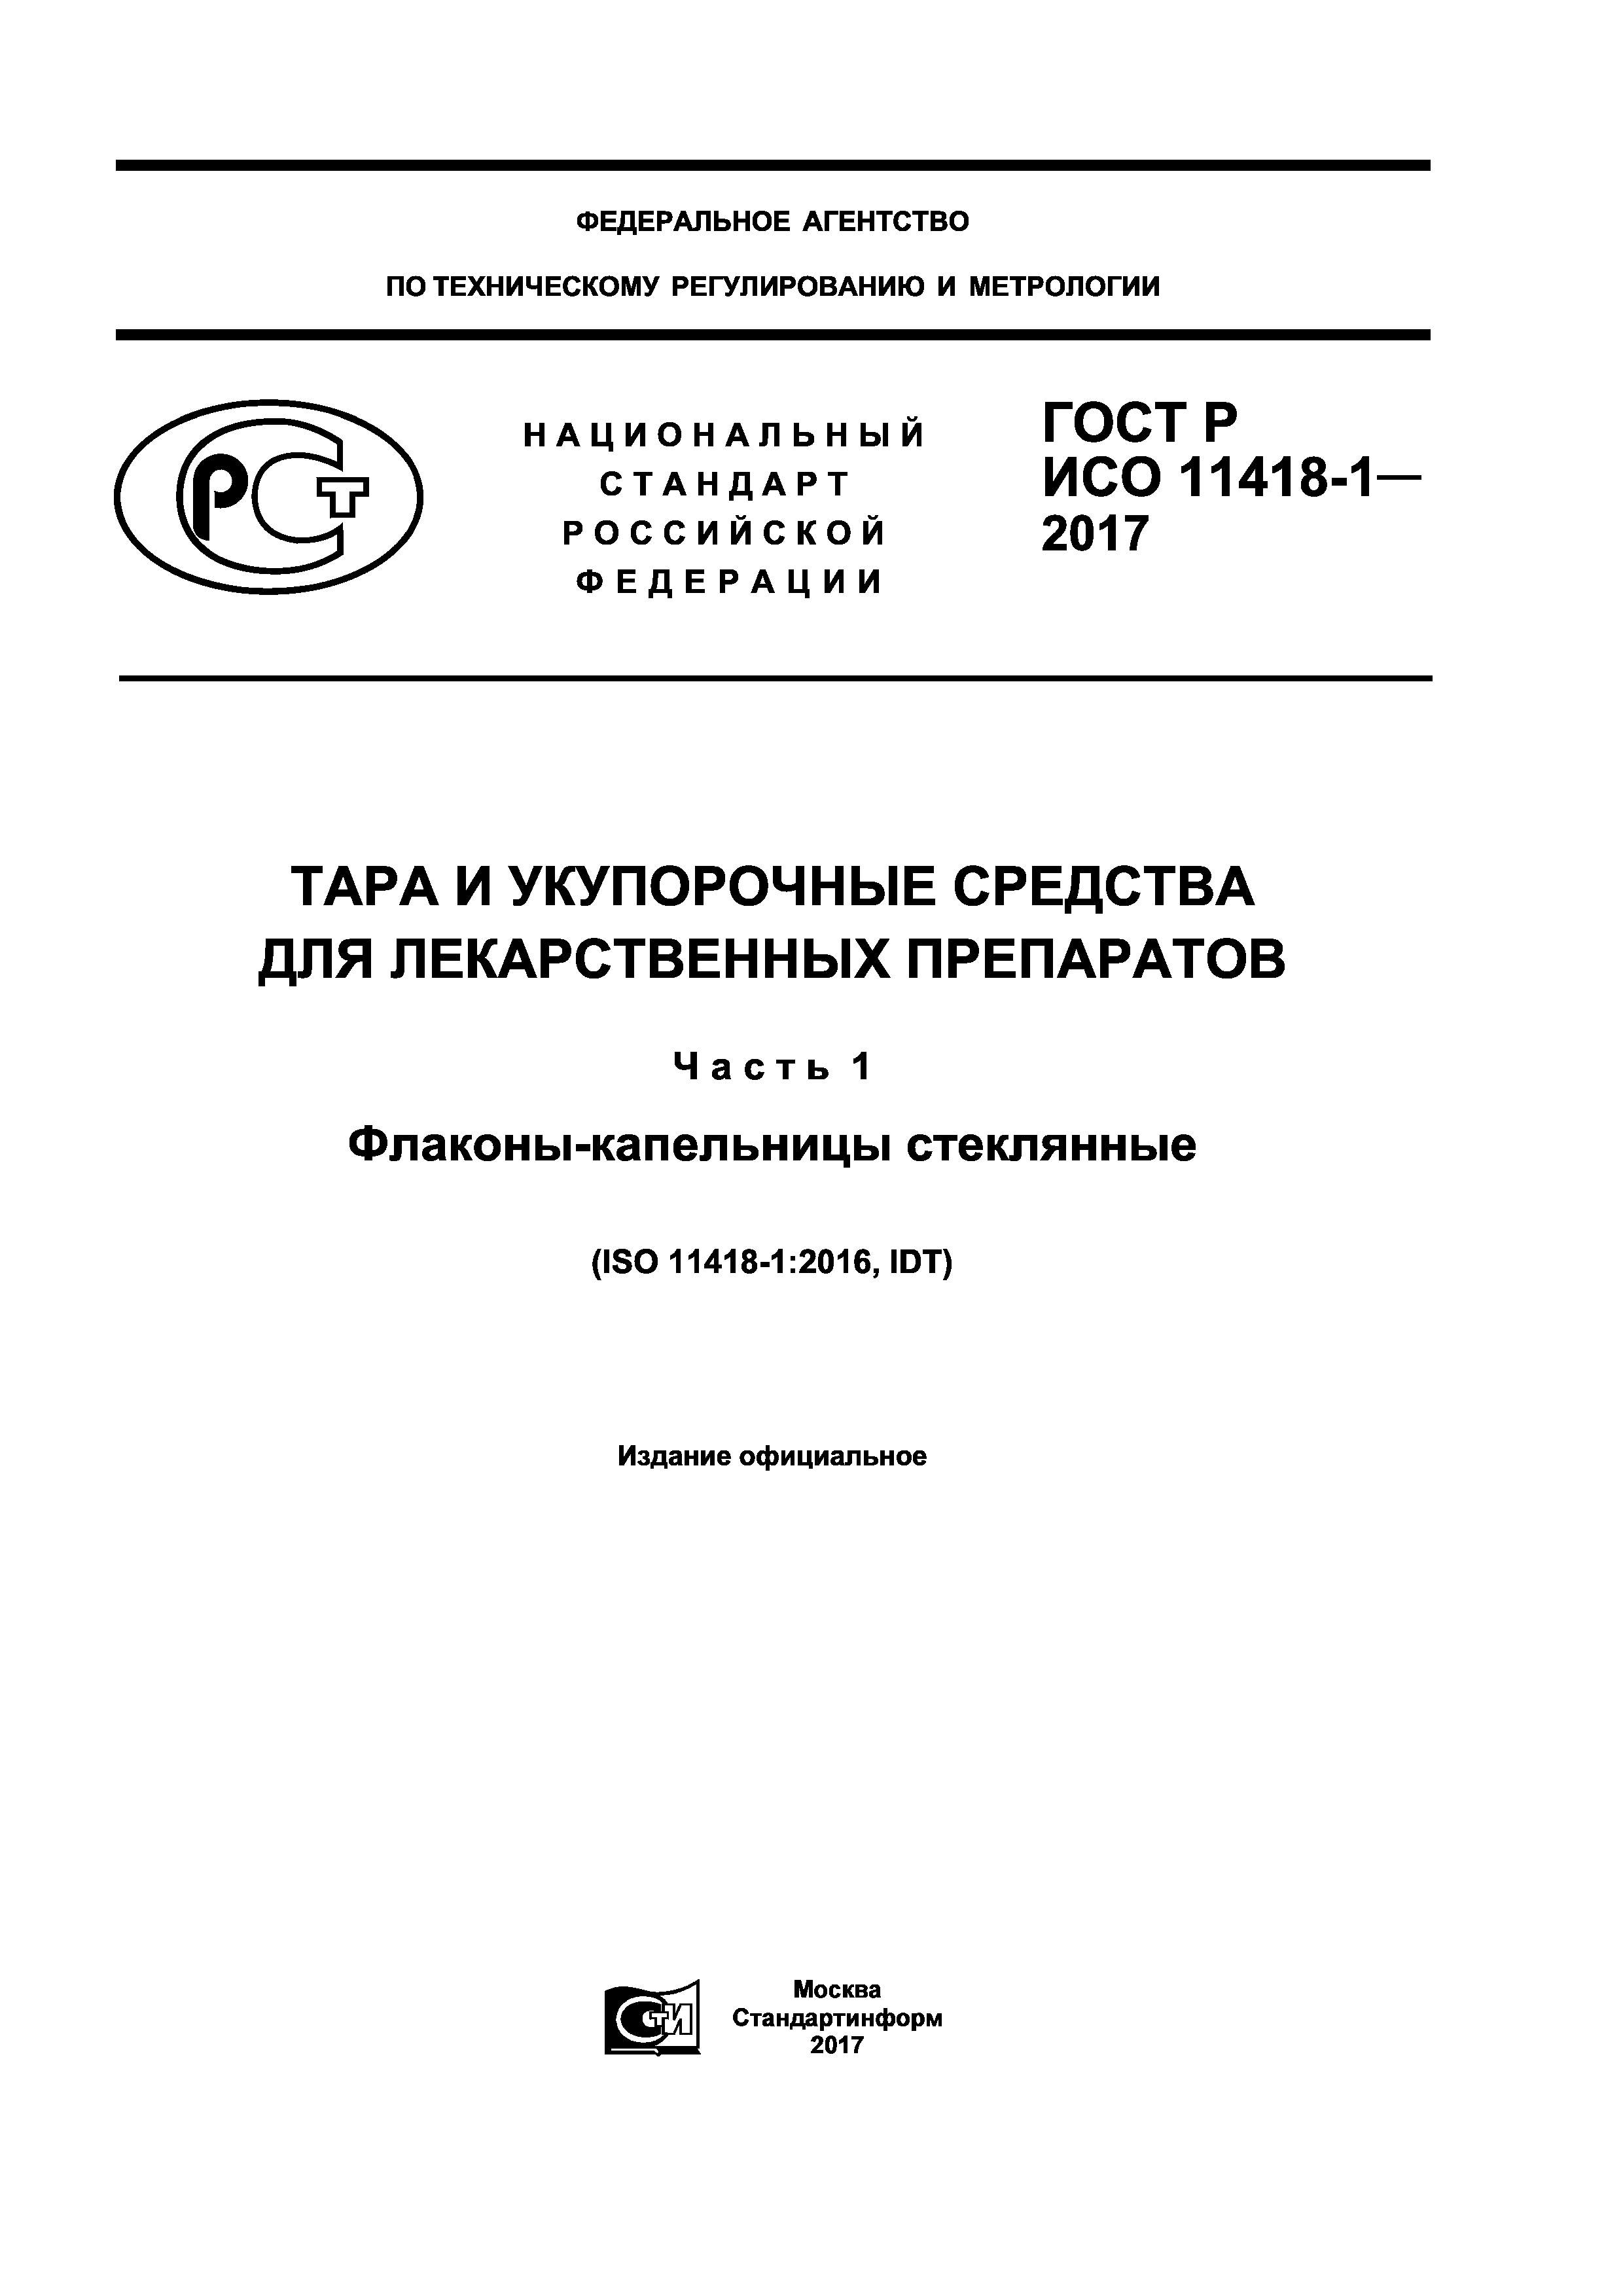 ГОСТ Р ИСО 11418-1-2017